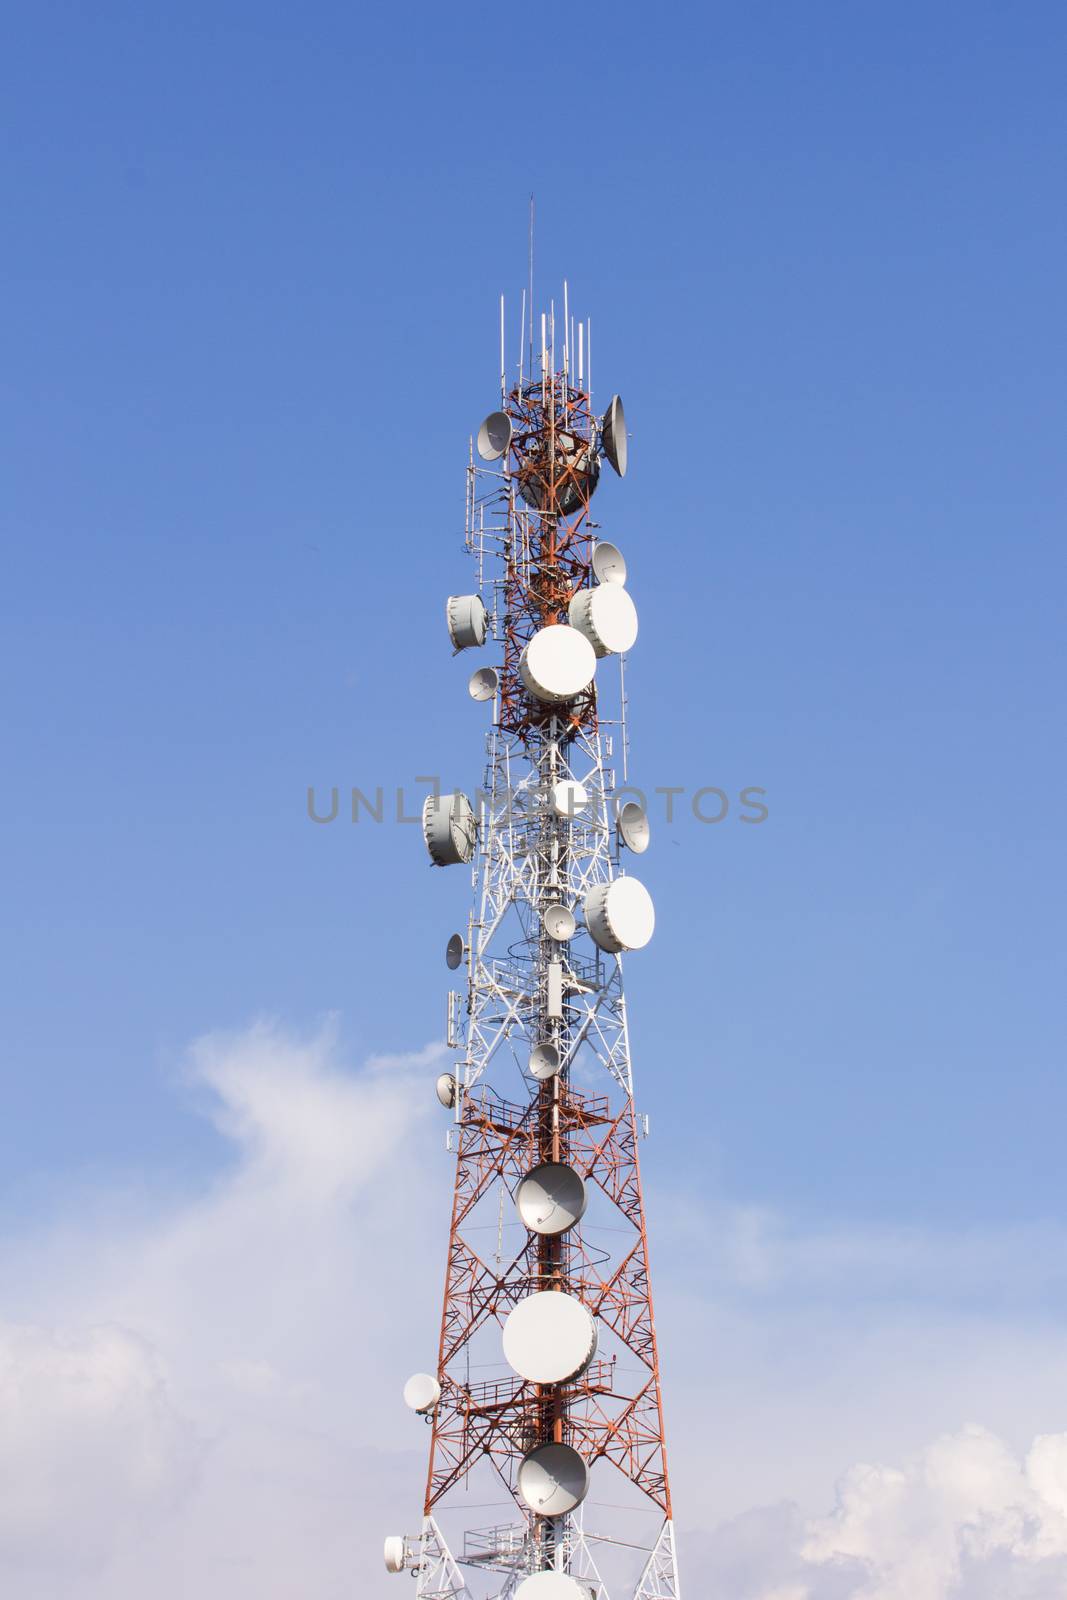 Telecommunication mast by a3701027